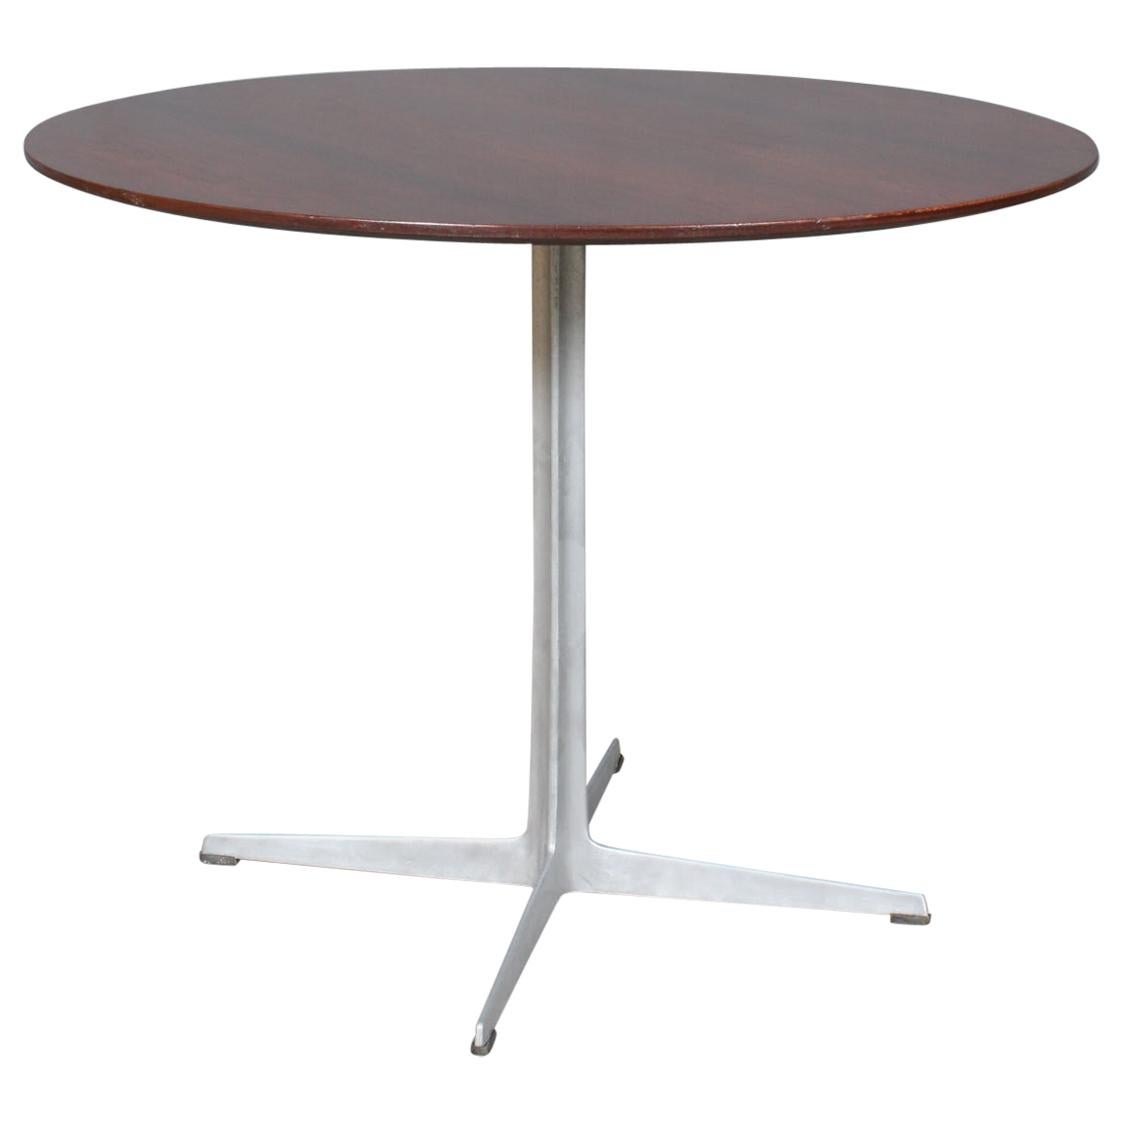 Arne Jacobsen dining table